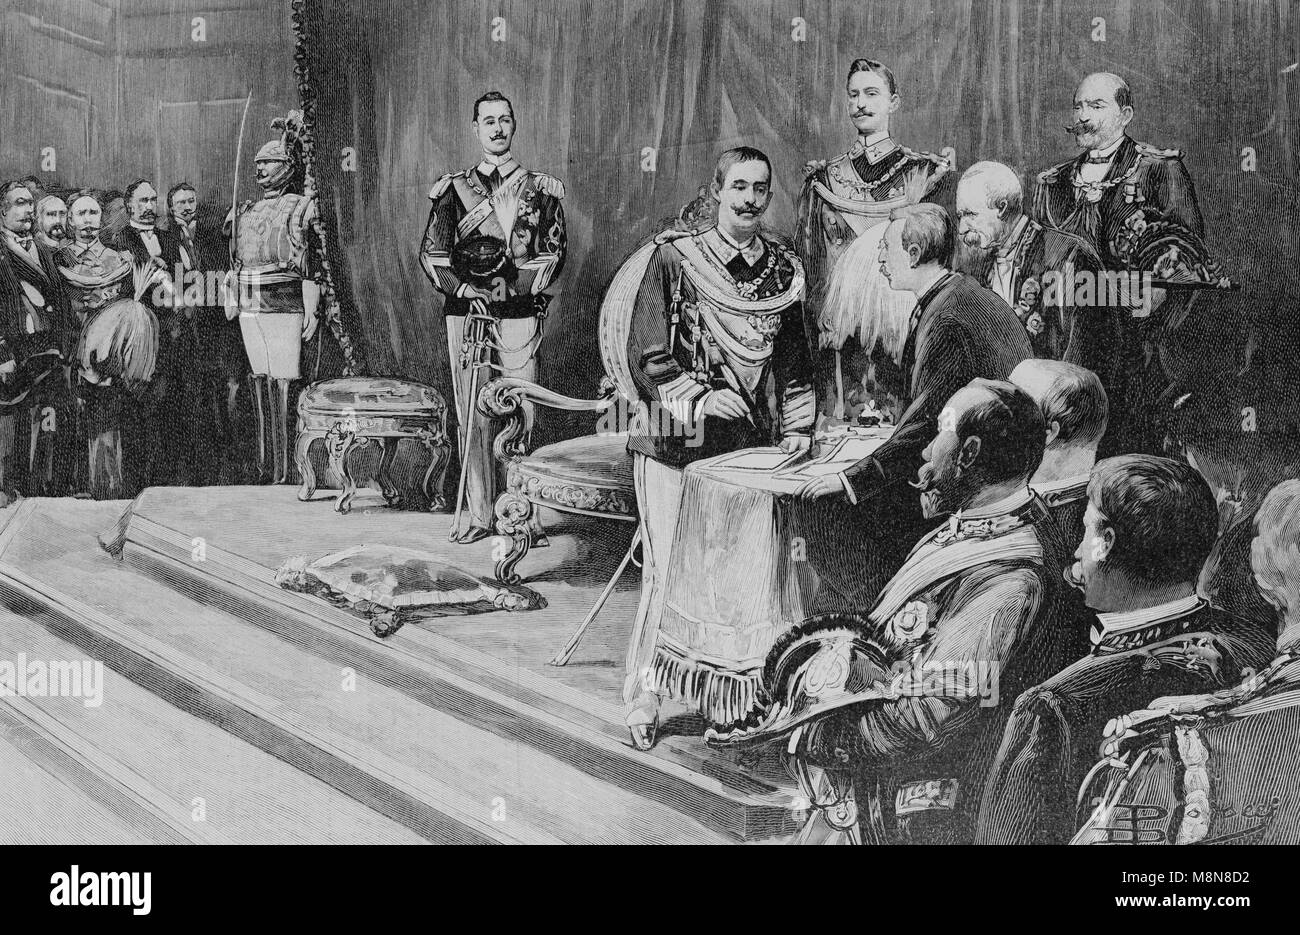 Le roi Victor Emmanuel III d'Italie lors de son sacre, Photo de l'hebdomadaire français journal l'illustration, 4 août 1900 Banque D'Images